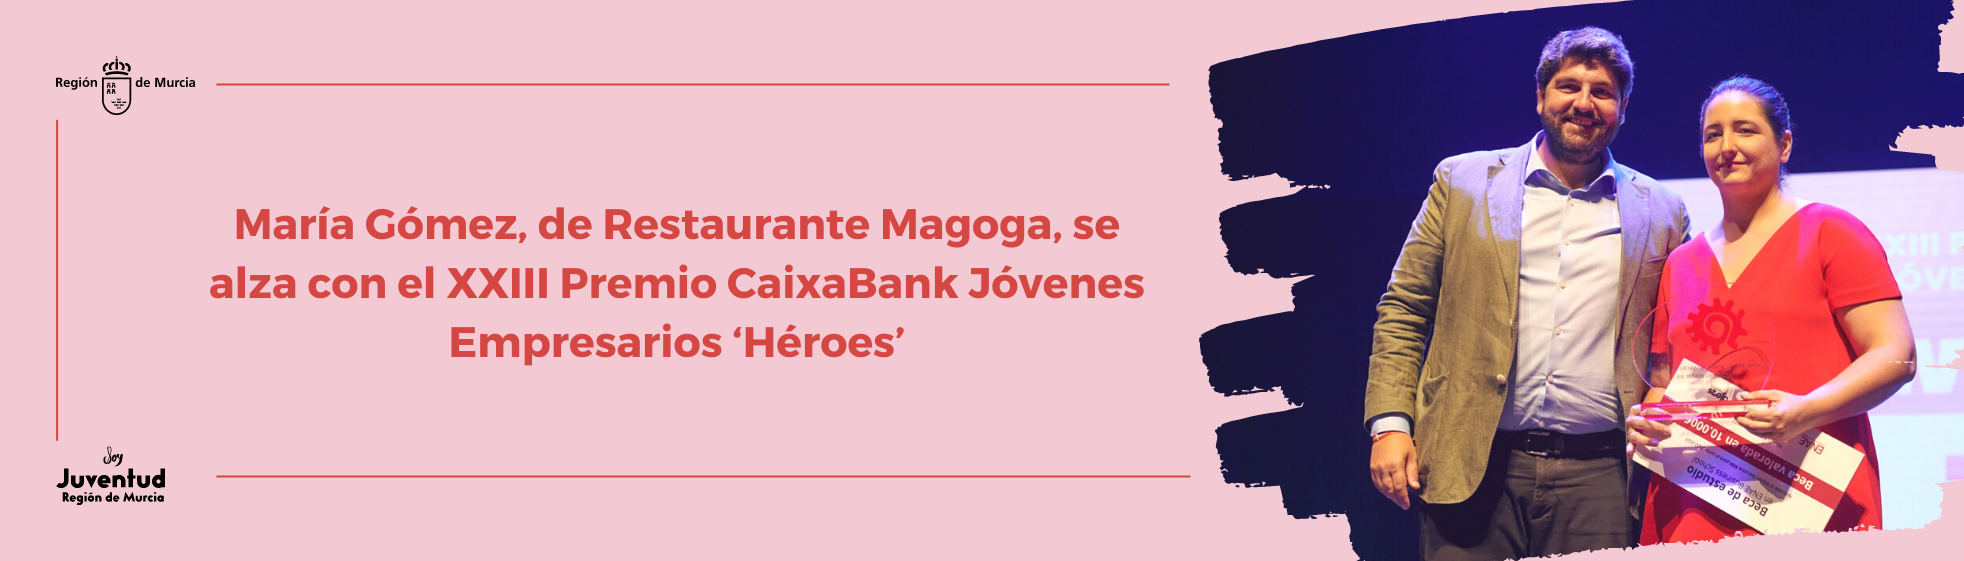 María Gómez, de Restaurante Magoga, se alza con el XXIII Premio CaixaBank Jóvenes Empresarios ‘Héroes’